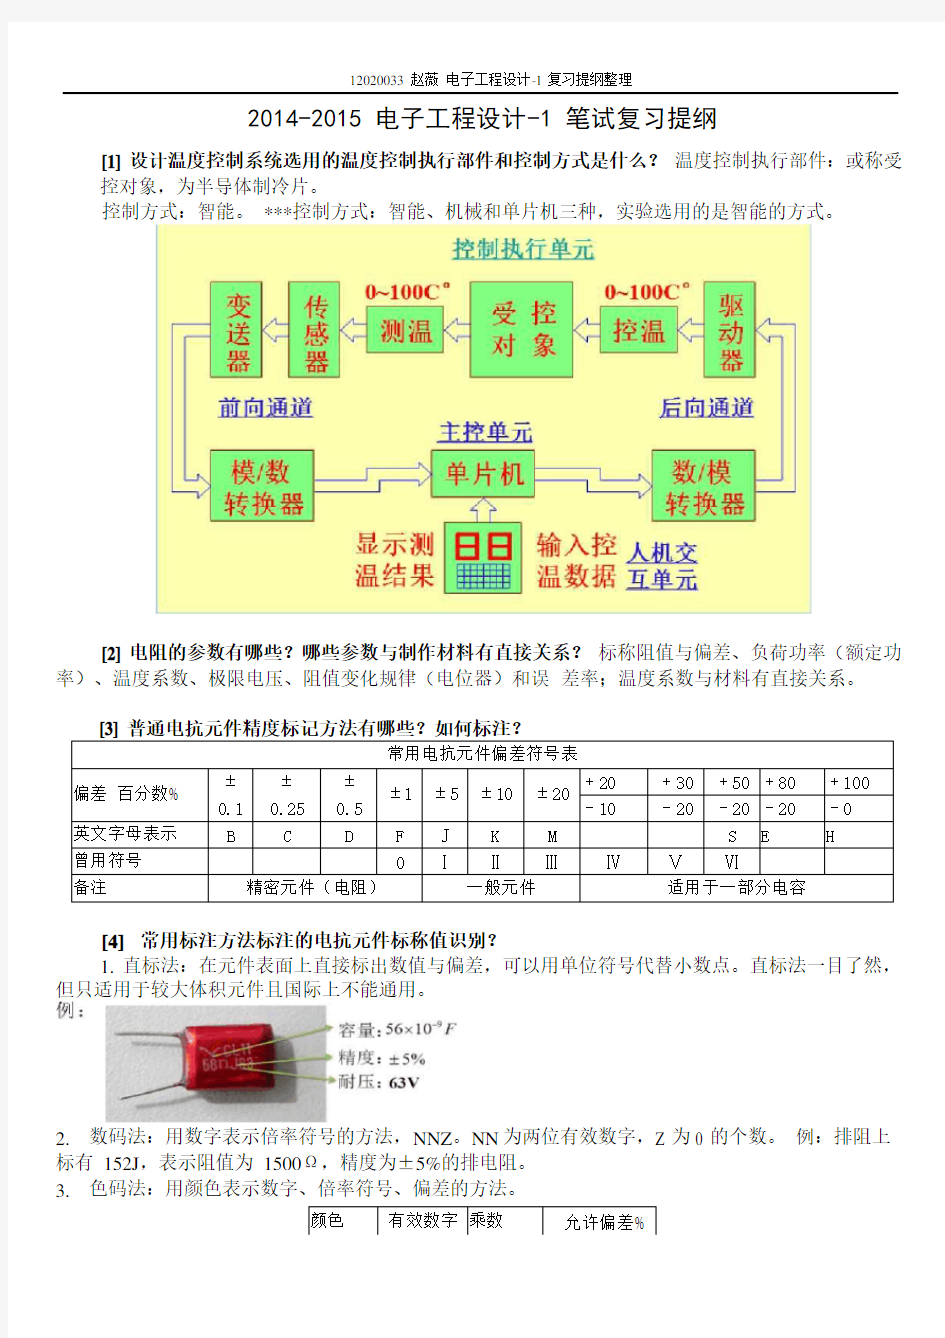 北京工业大学_电子工程设计1考试复习范围_总结